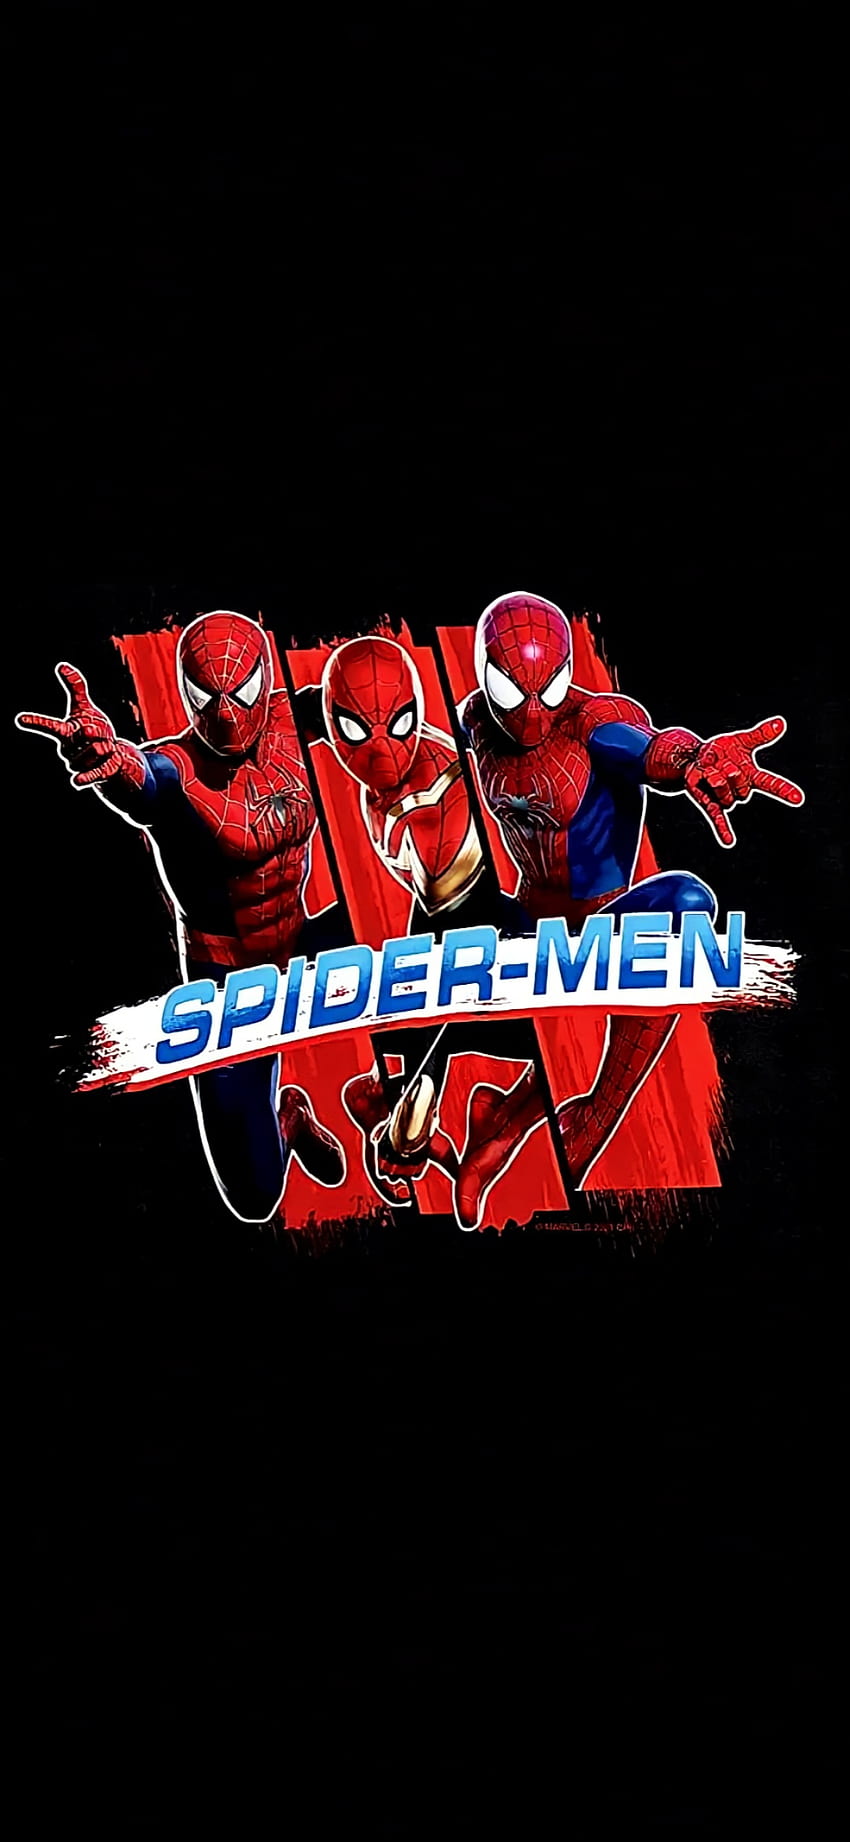 Spider-Men NWH, Spider-Man, Tobey Maguire, Kein Weg nach Hause, Spider Man, Tom Holland, Andrew Garfield, Spidermen, Spiderverse, Marvel, Spiderman HD-Handy-Hintergrundbild